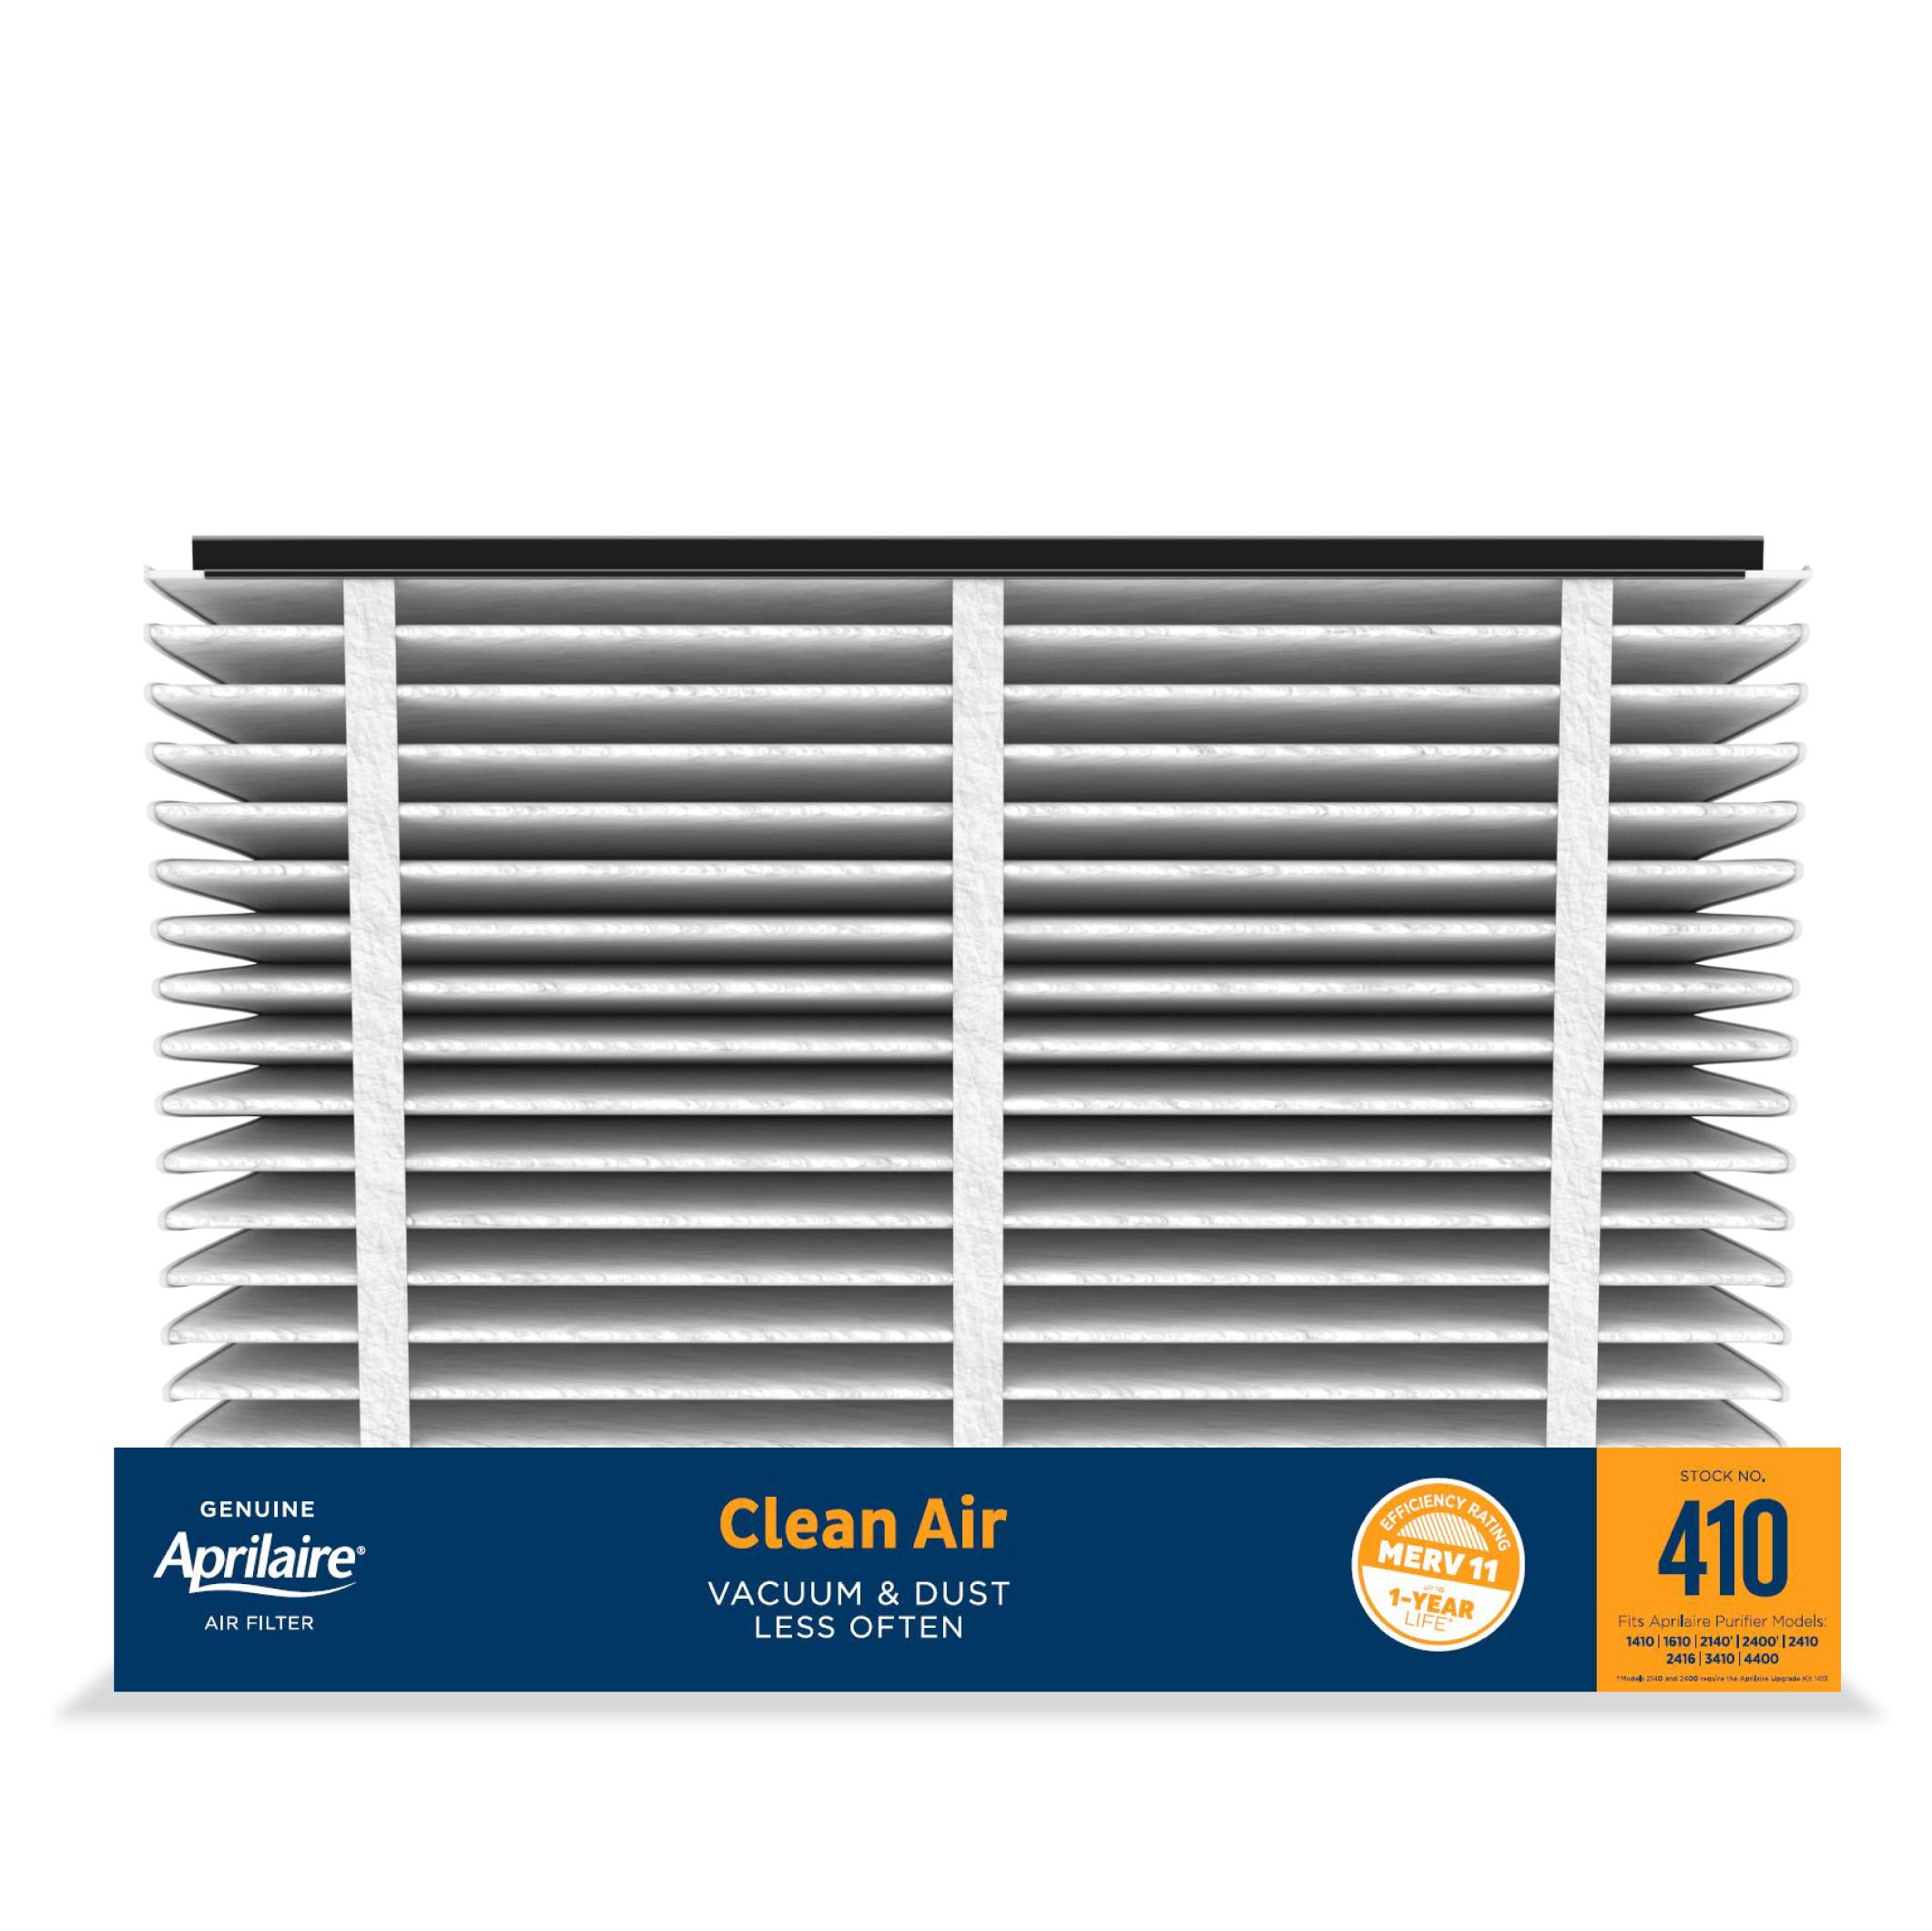 Aprilaire 410 替换炉空气过滤器适用于整个家用空气净化器